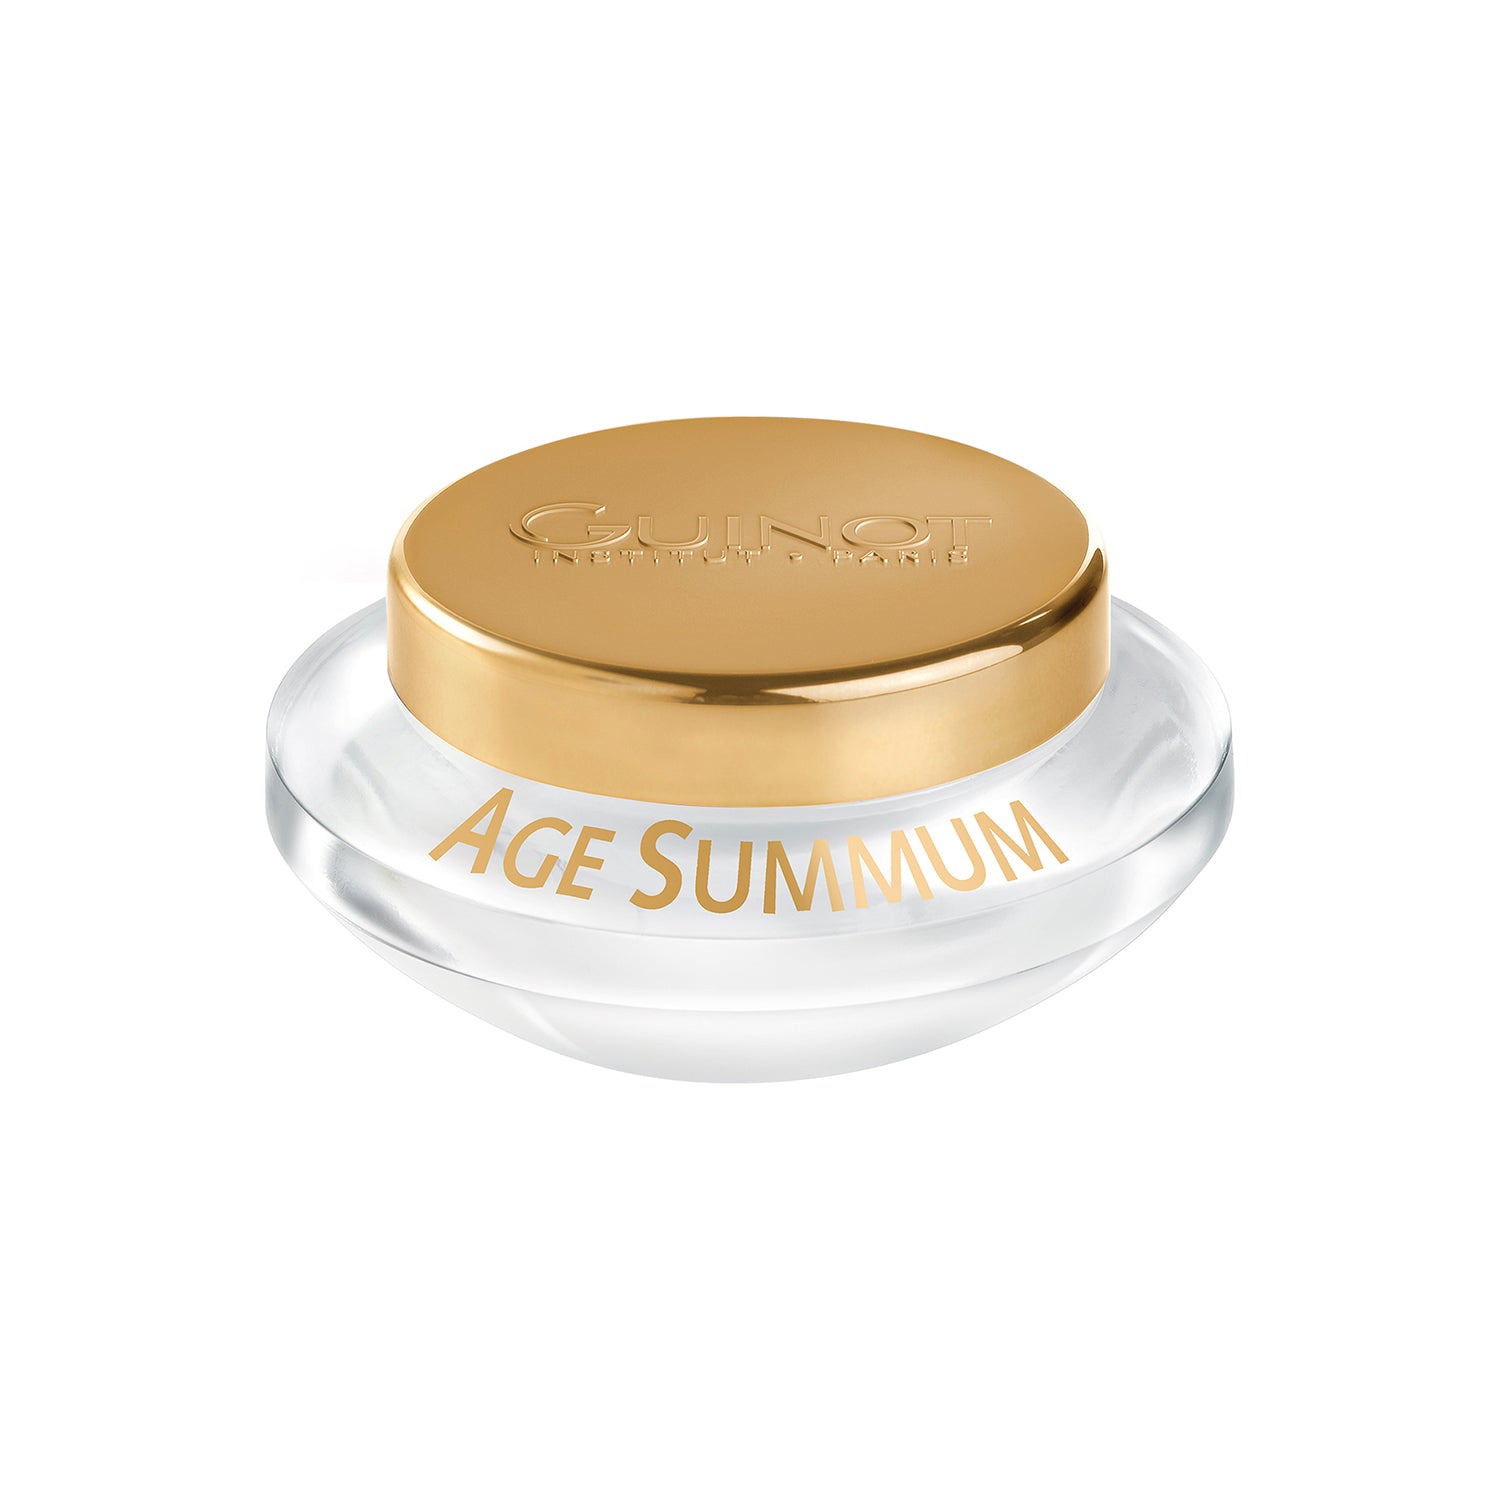 Age Summum Cream 50ml